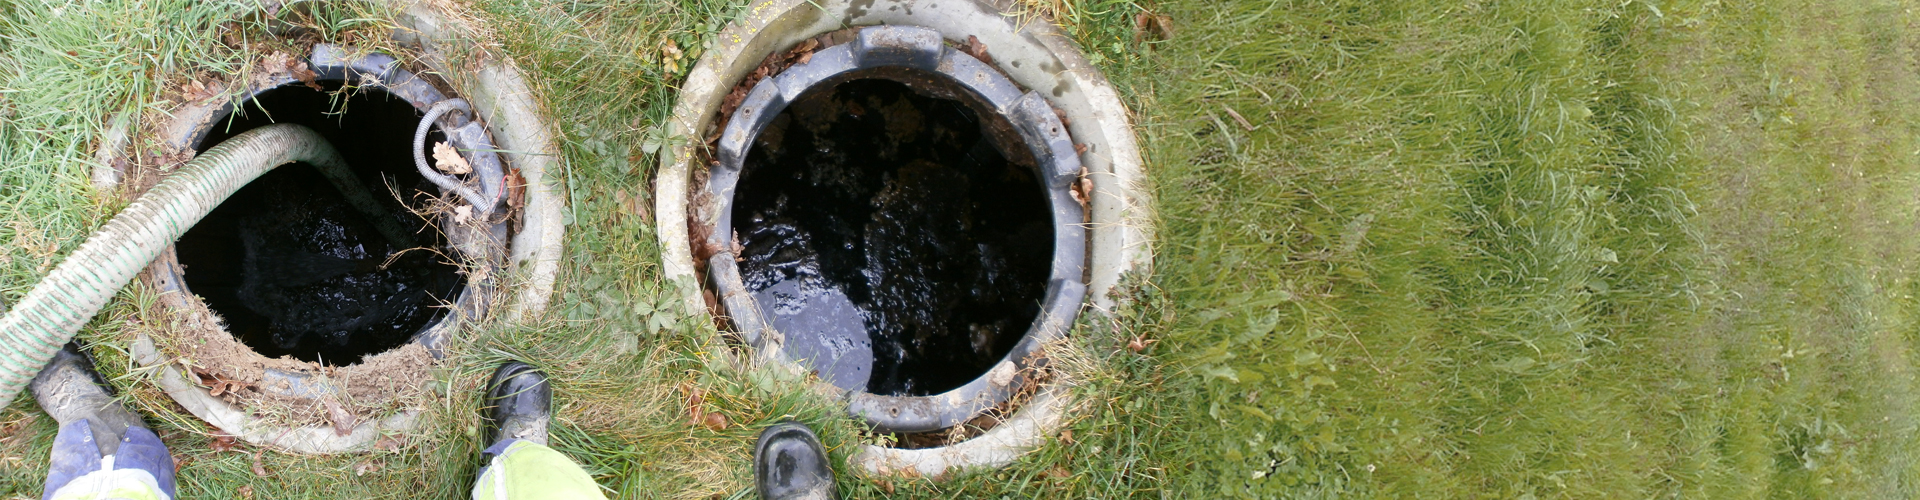 Produit de débouchage liquide drains et fosses septiques